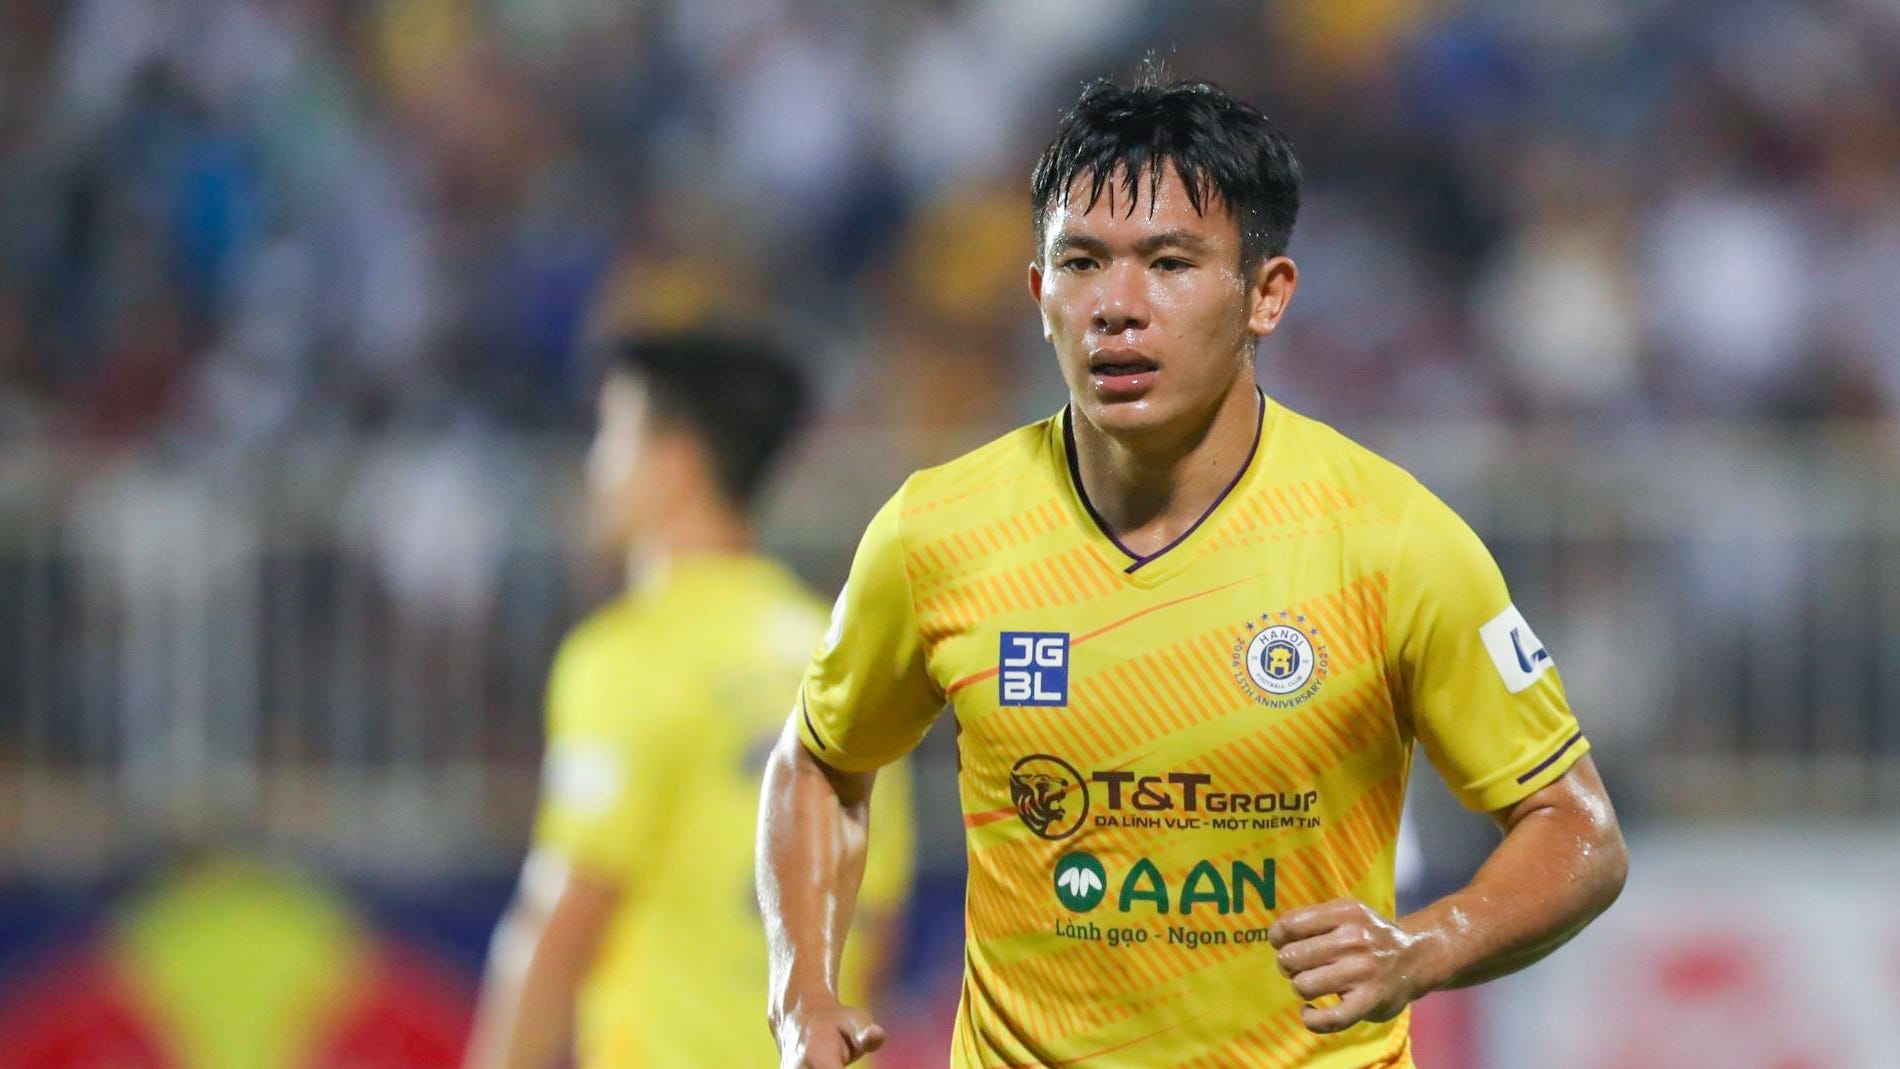 Le Van Xuan Ha Noi FC V.League 2022